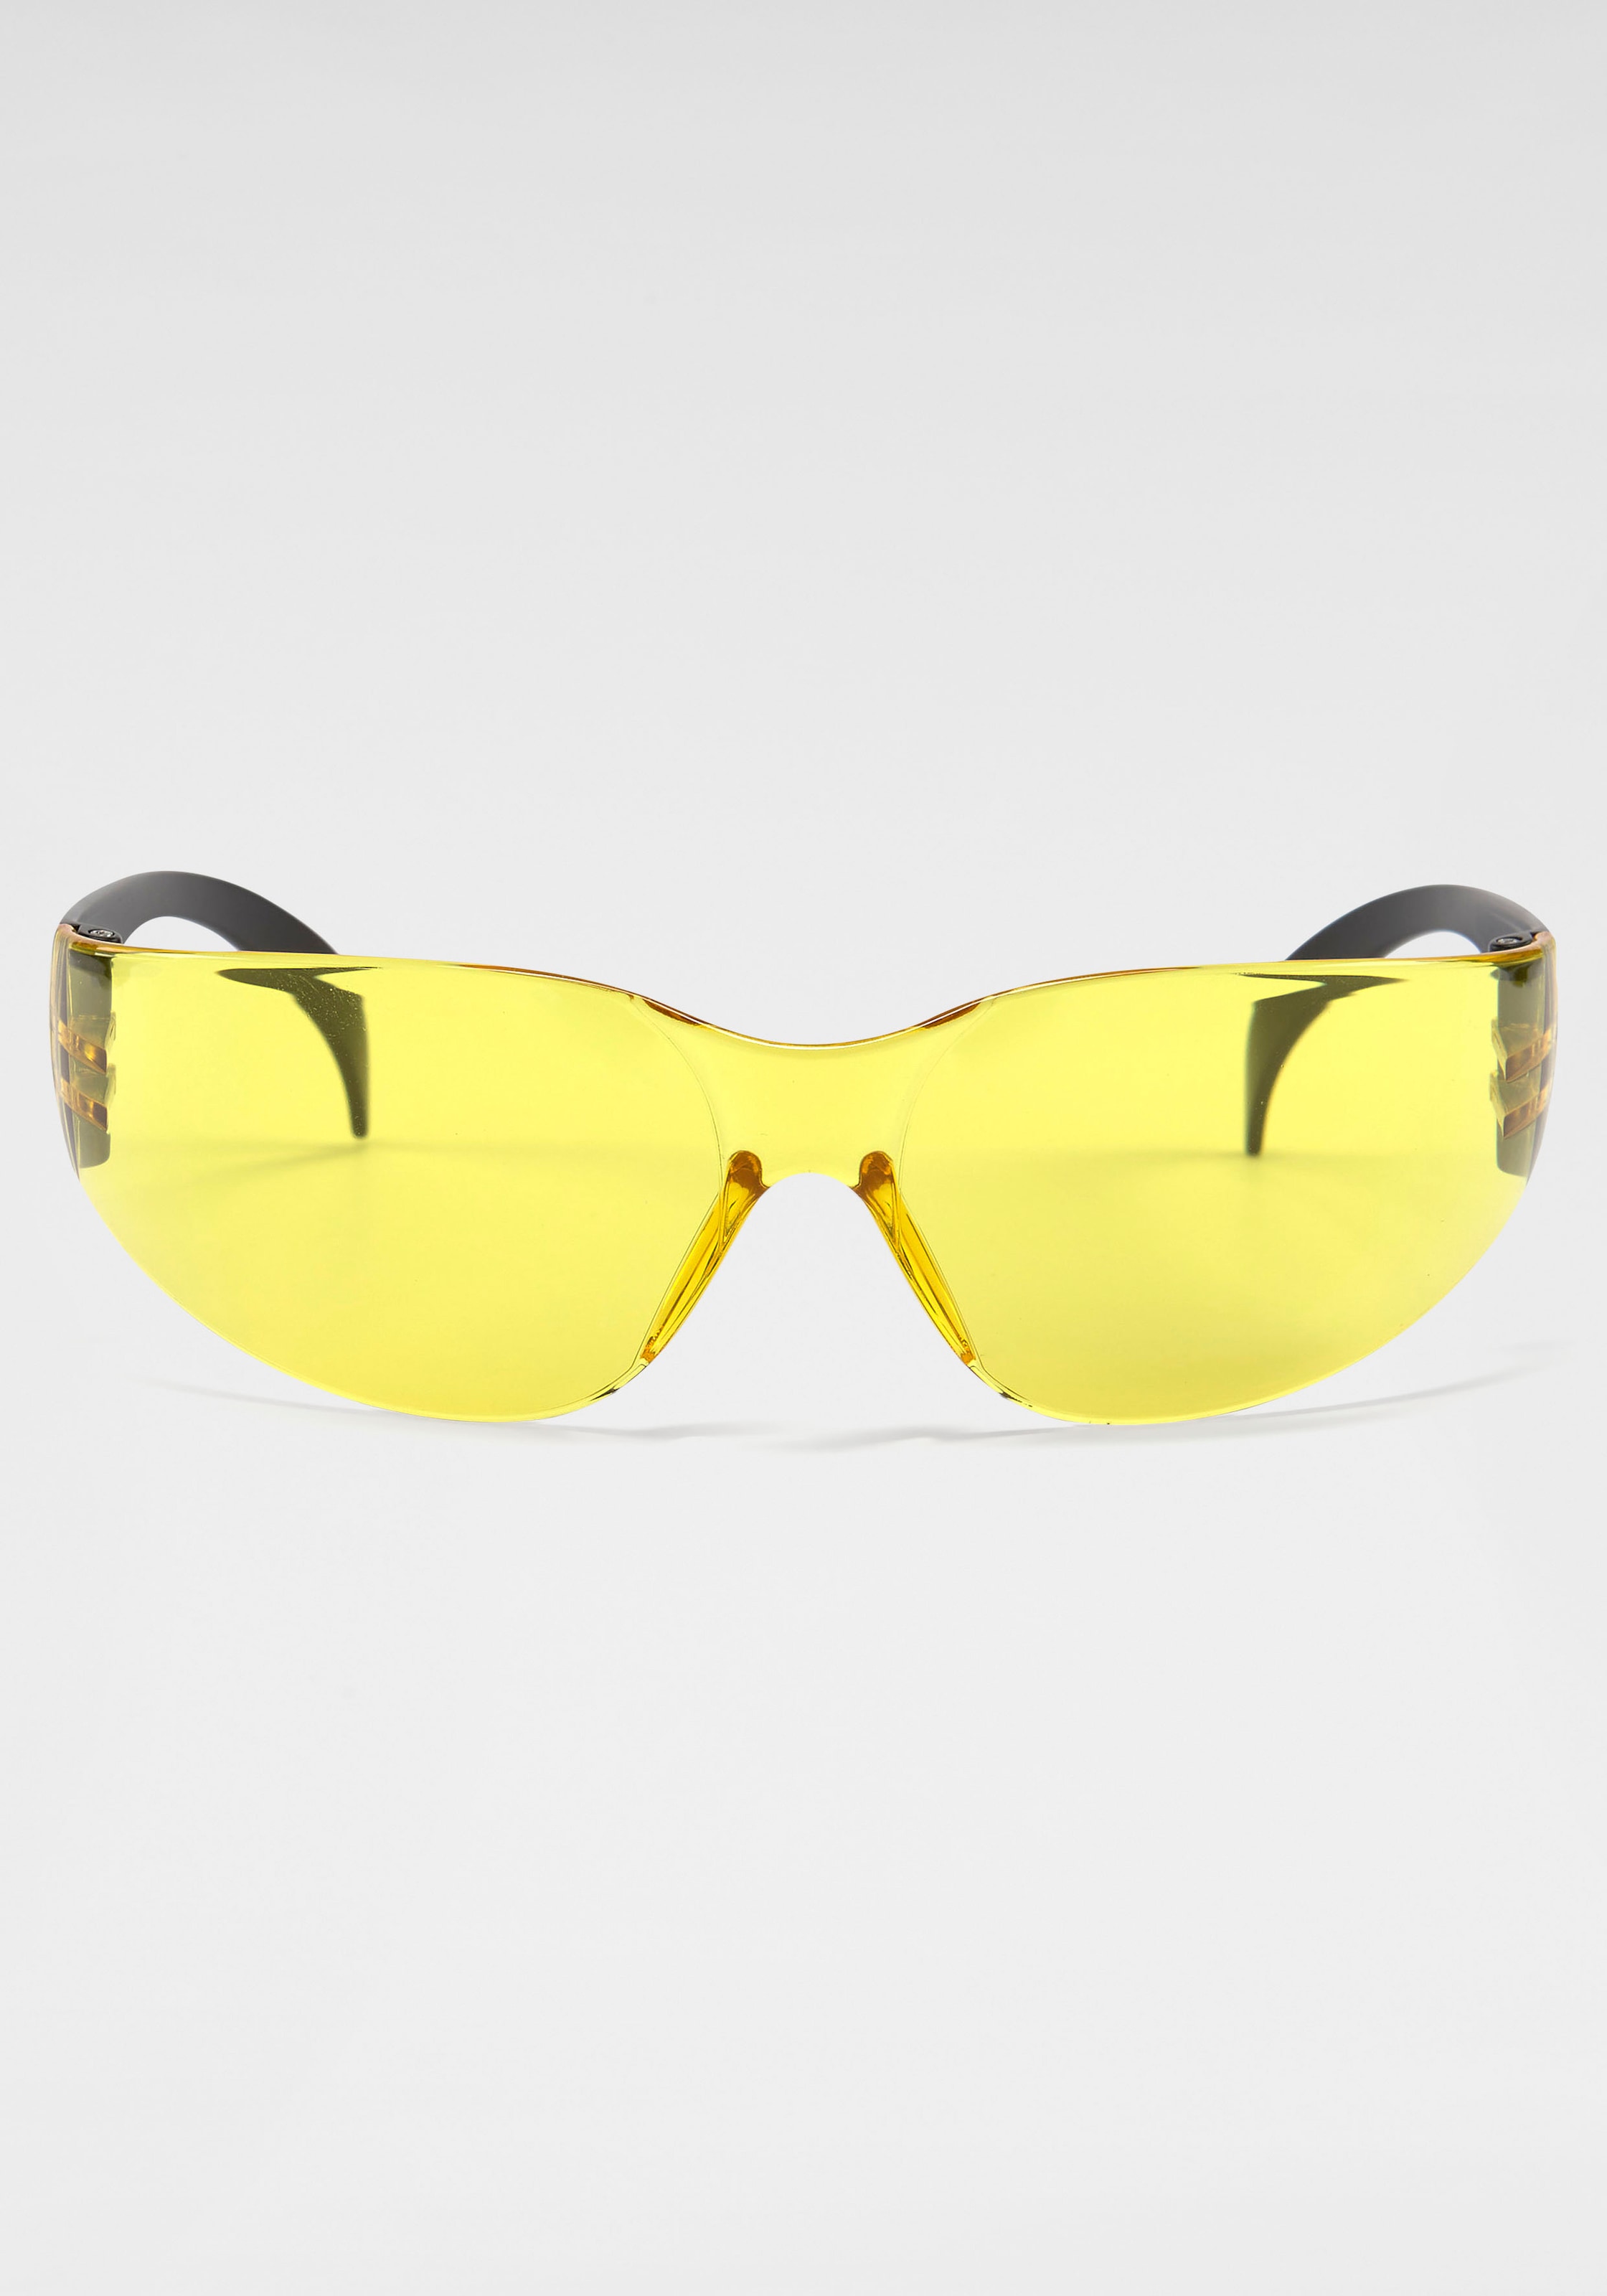 BACK IN BLACK Eyewear Sonnenbrille, Randlos für kaufen | BAUR